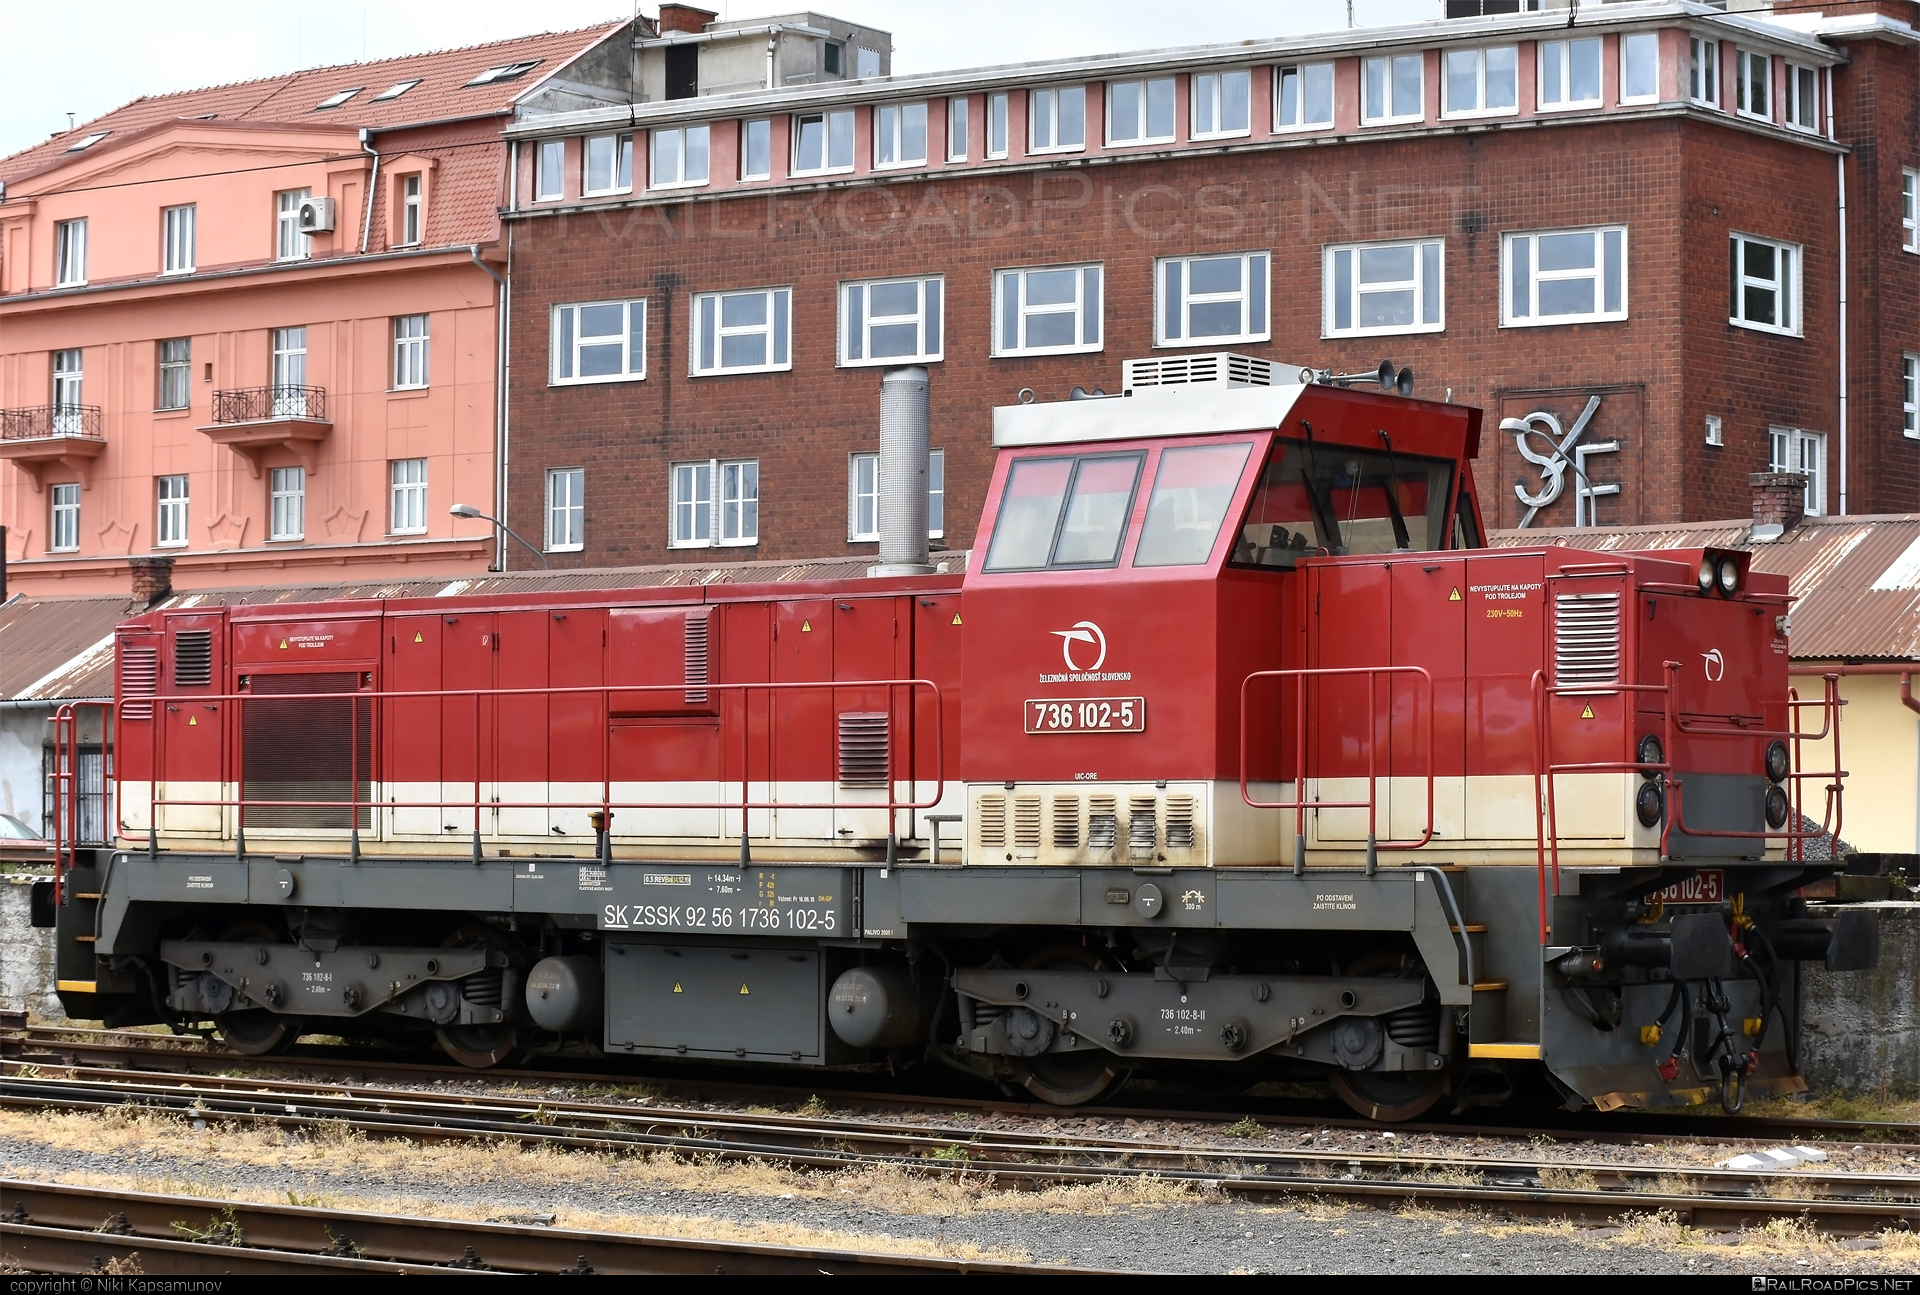 ŽOS Zvolen Class 736 - 736 102-5 operated by Železničná Spoločnost' Slovensko, a.s. #ZeleznicnaSpolocnostSlovensko #locomotive736 #zoszvolen #zoszvolen736 #zssk